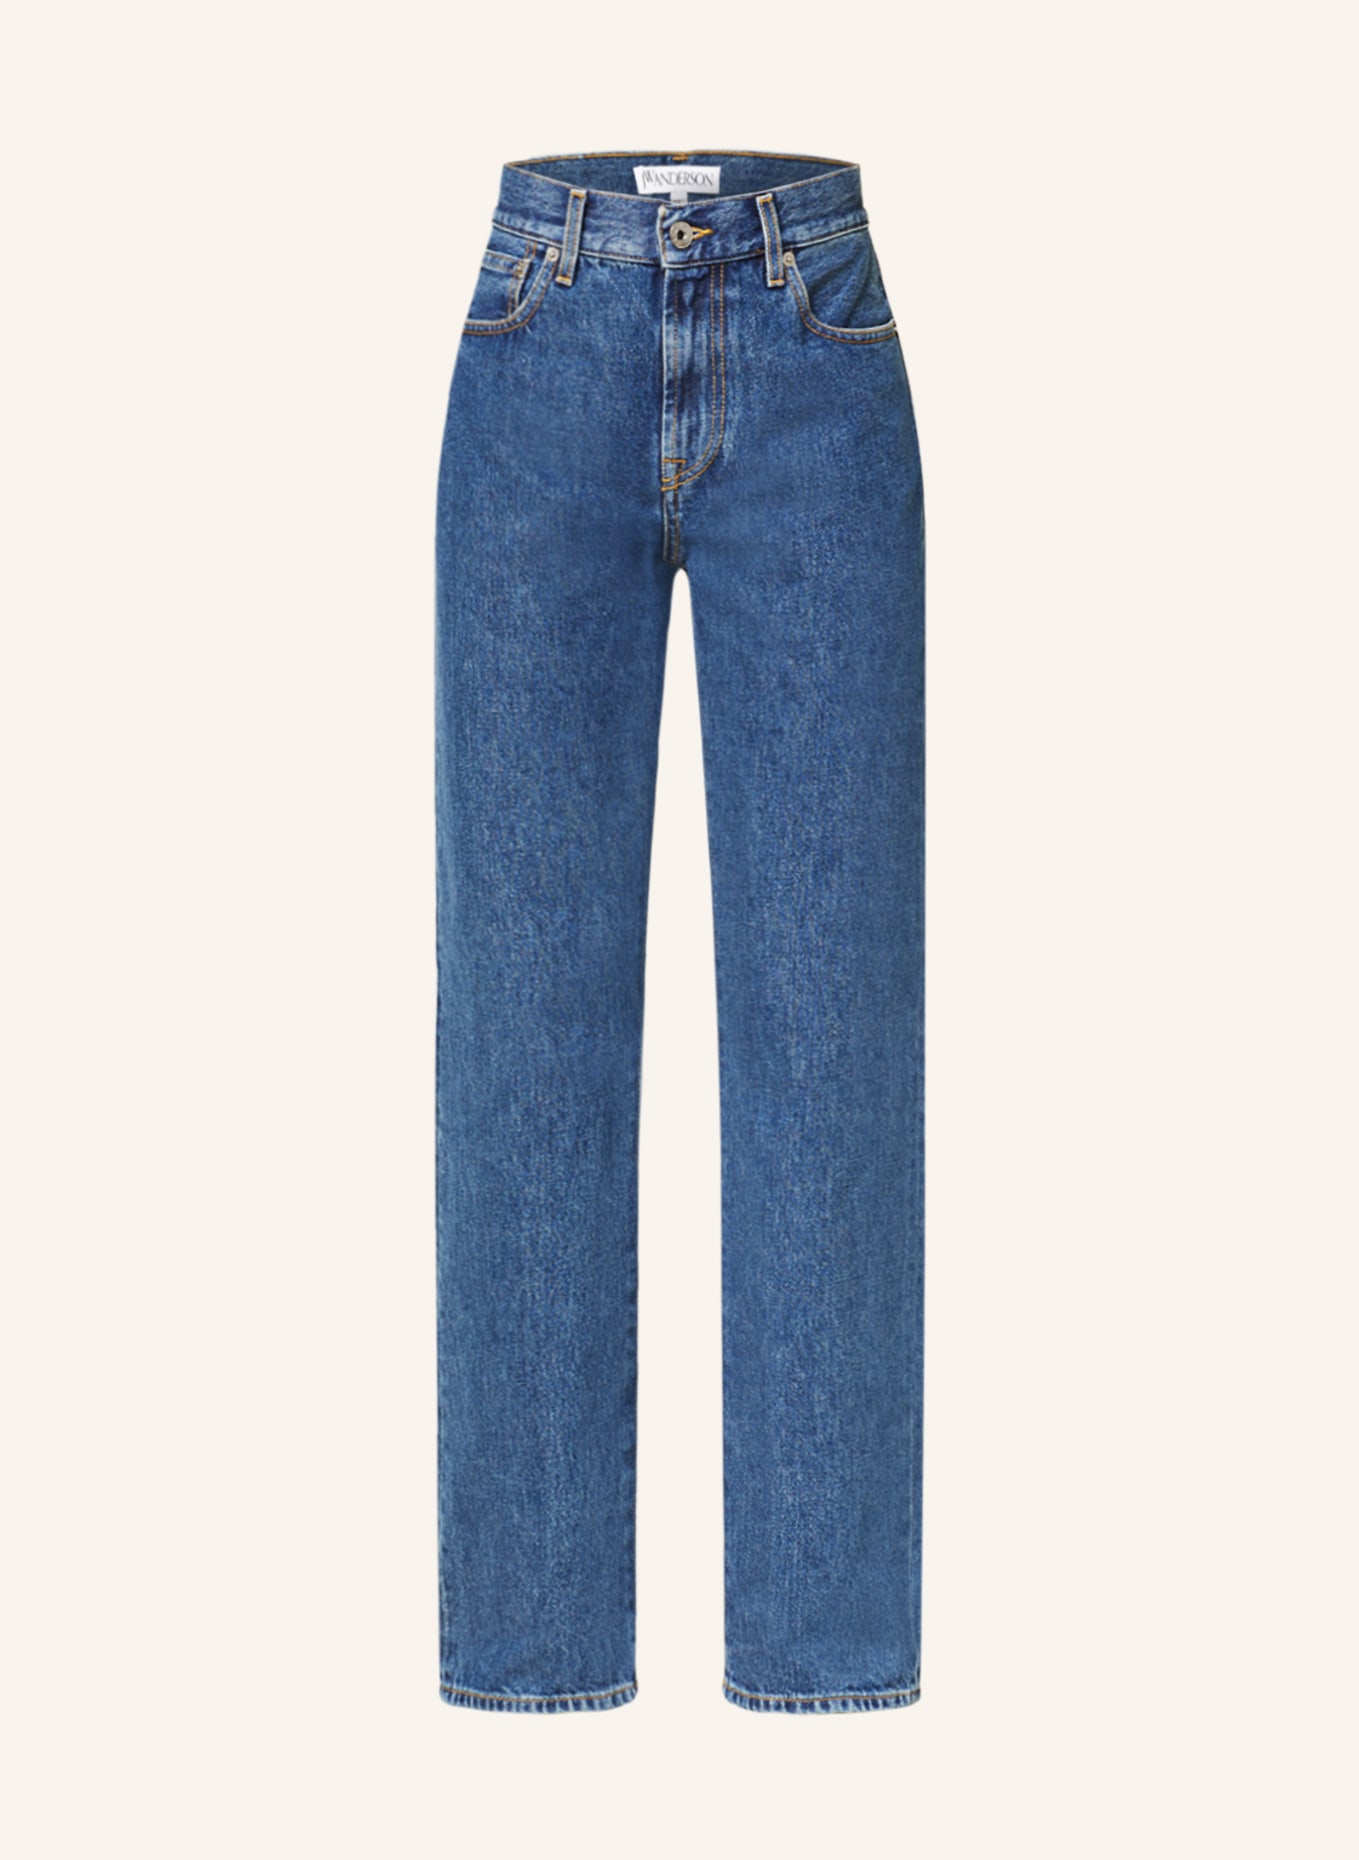 JW ANDERSON Jeans, Farbe: 870 INDIGO (Bild 1)